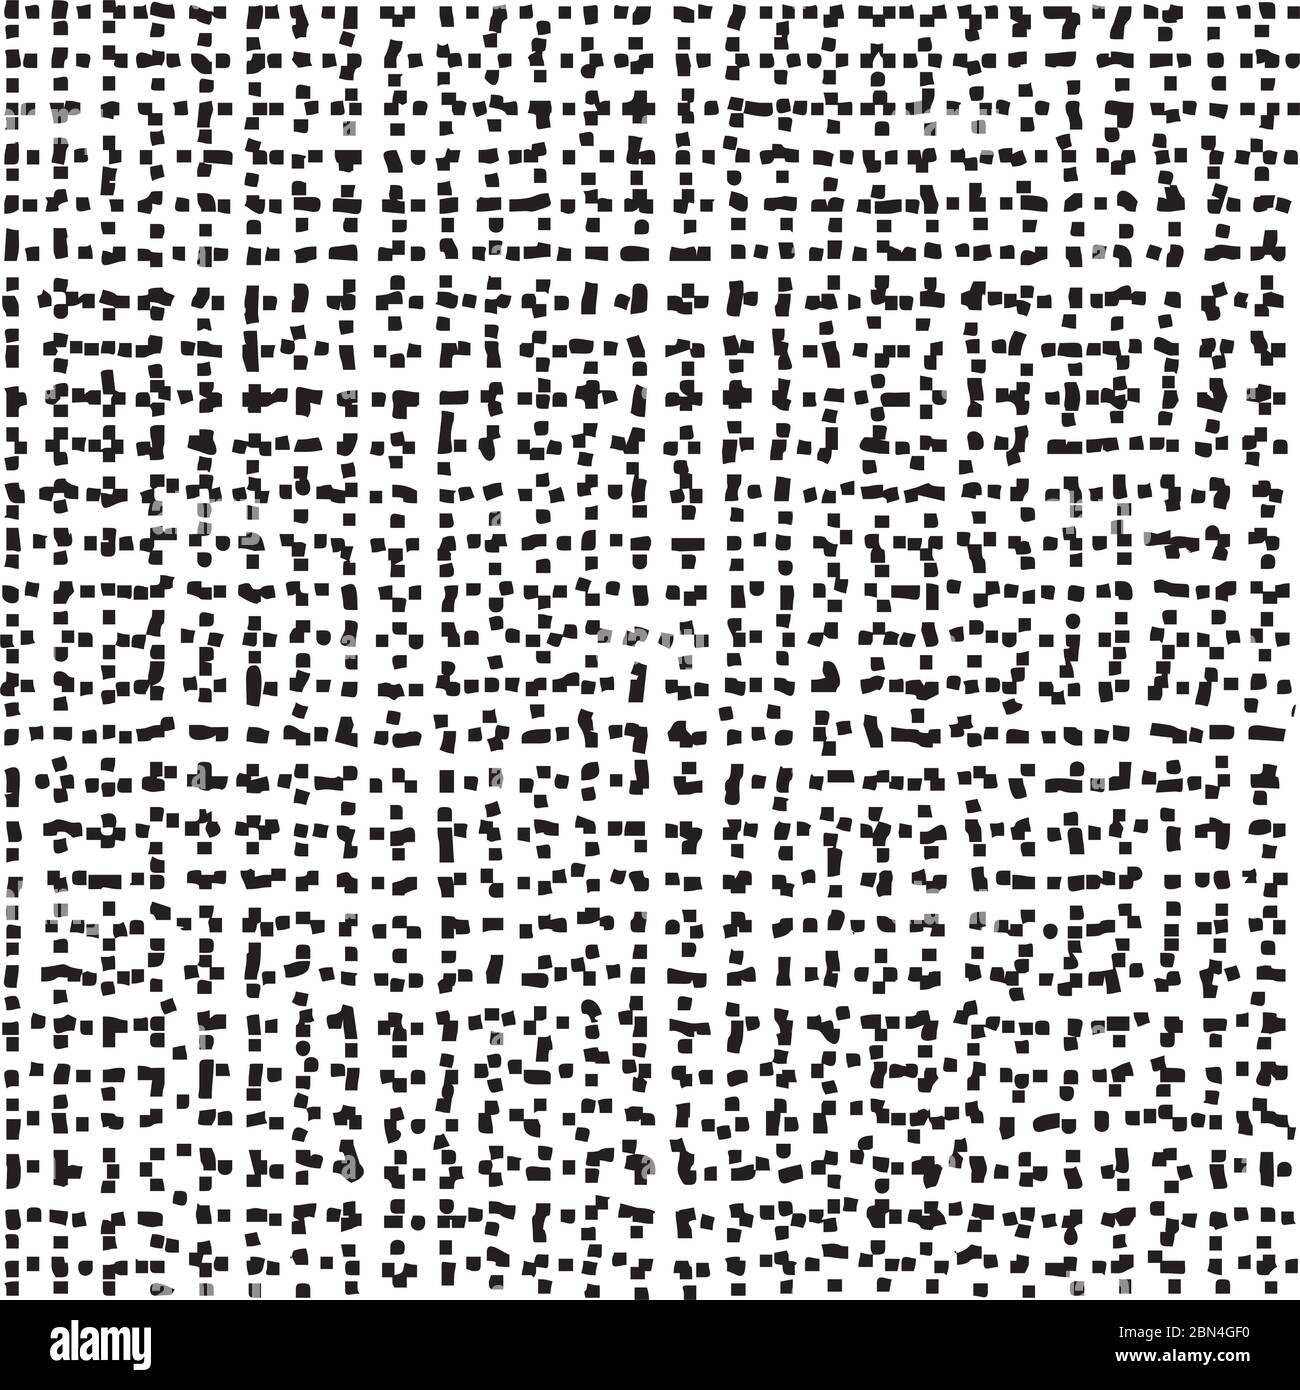 Horizontale und vertikale Kreuzung gewellten gestrichelten Linien nahtlose Muster. Abstrakte Wickelstruktur in Schwarz-Weiß-Farben. Vektor eps8 Abbildung. Stock Vektor